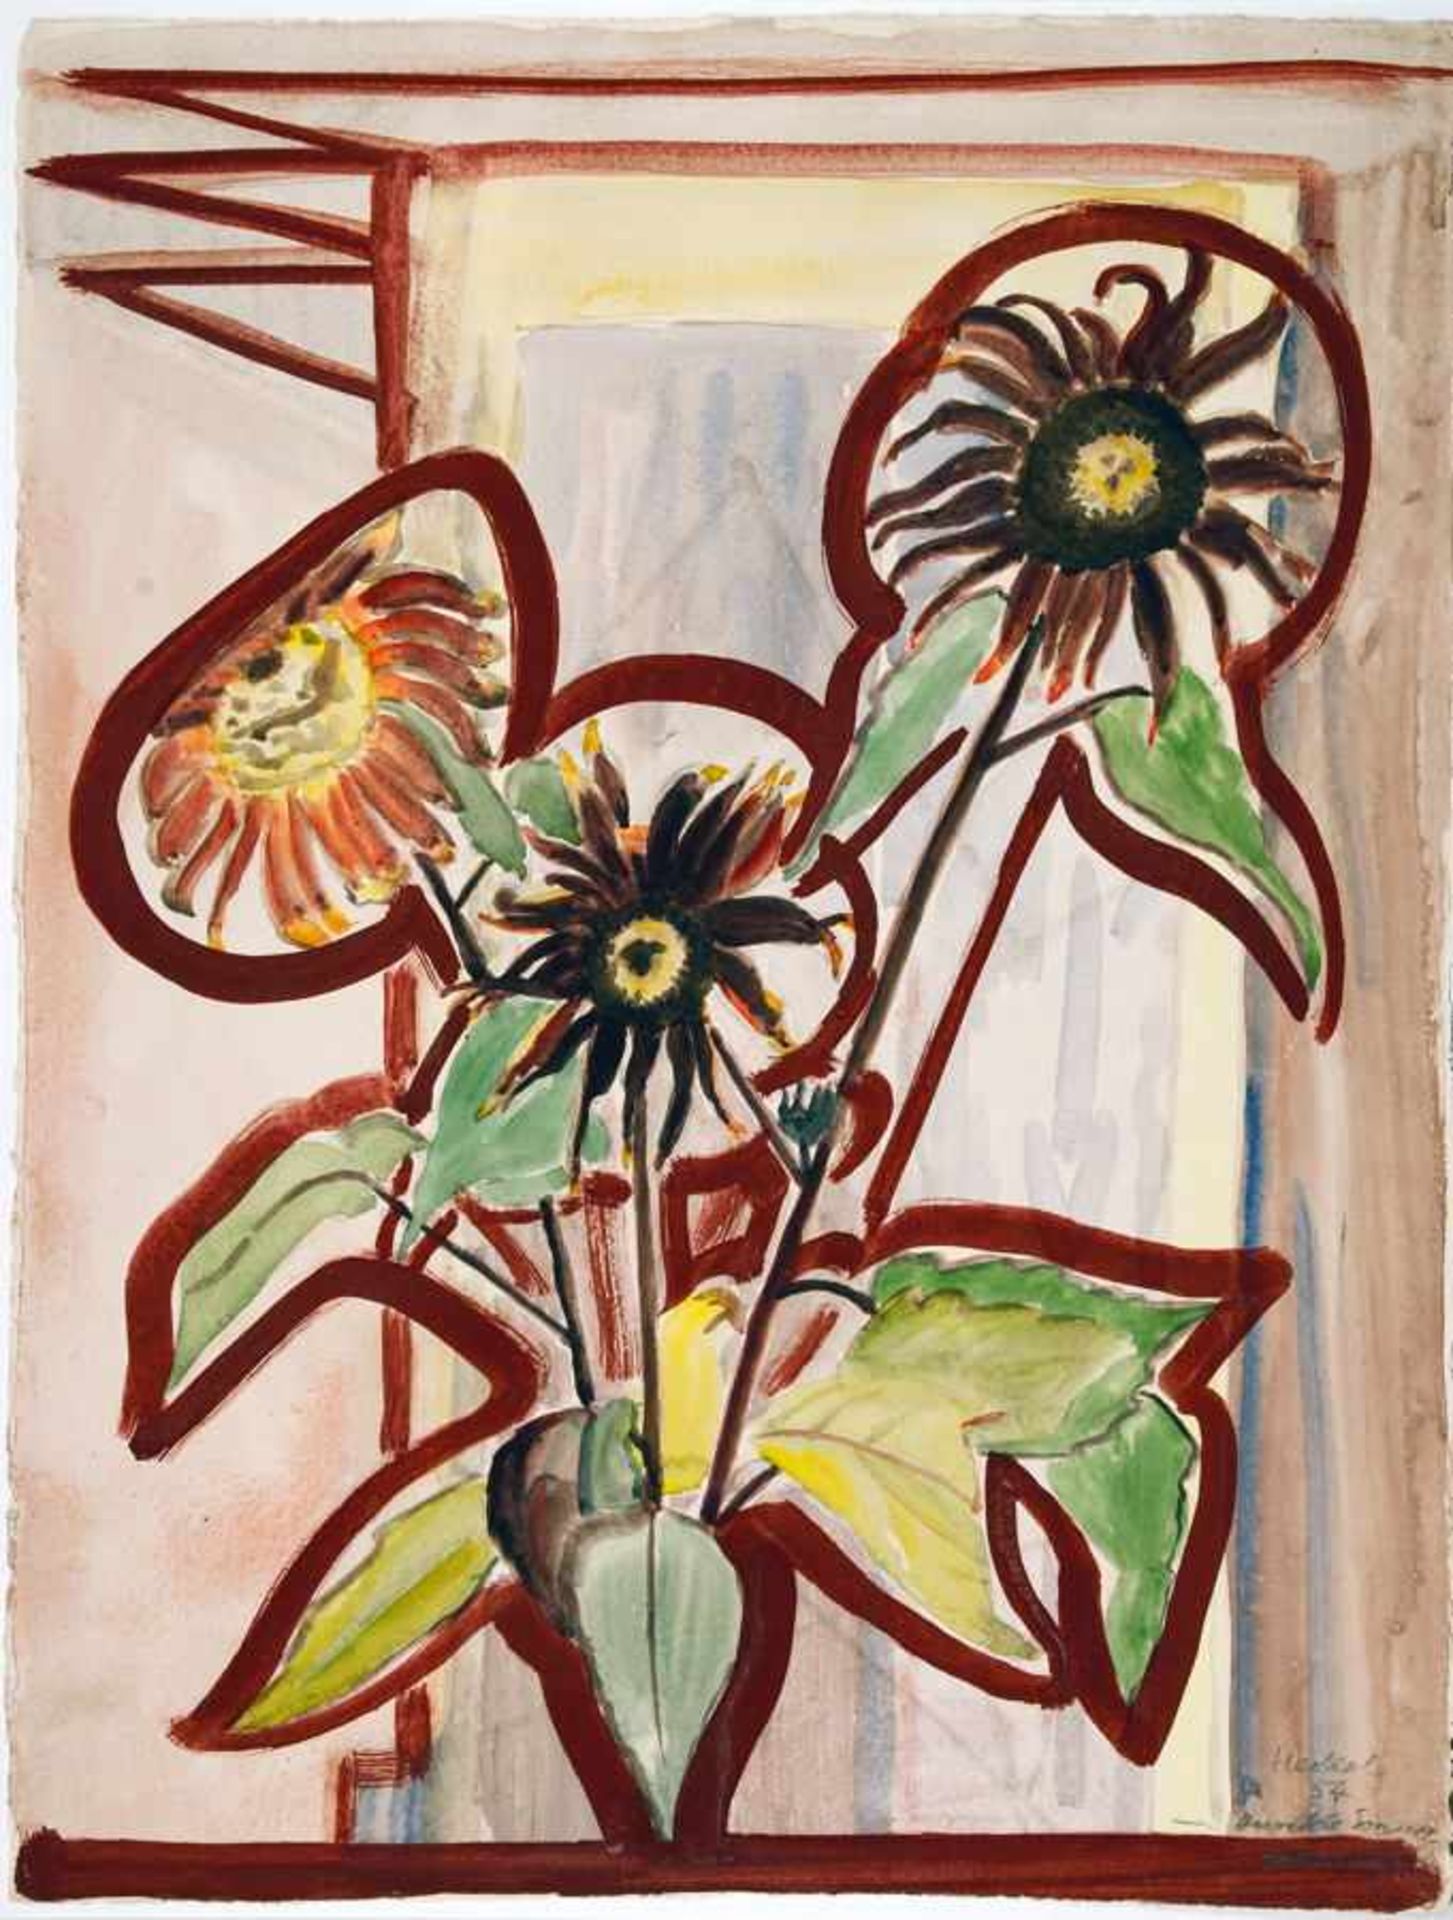 Erich Heckel. Dunkle Sonnenblumen. Aquarell. 1954. 69,0 : 53,3 cm. Signiert, datiert und betitelt.